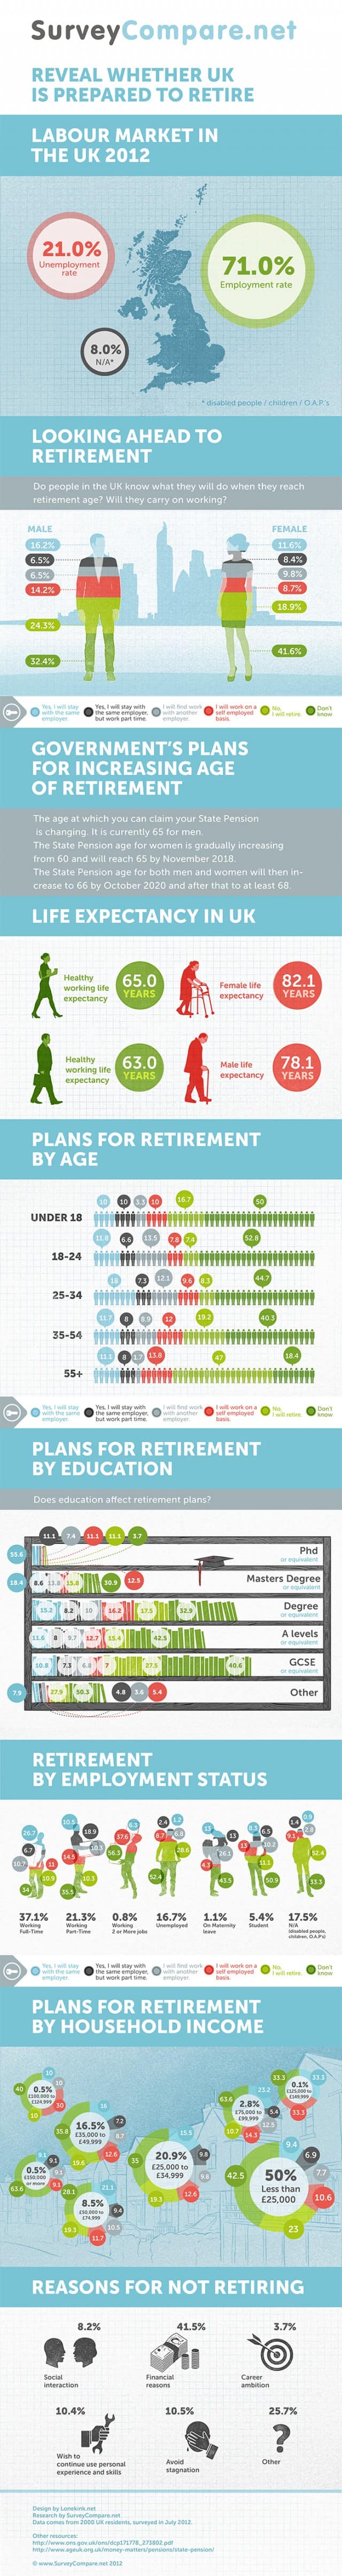 Changes in U.K. Retirement